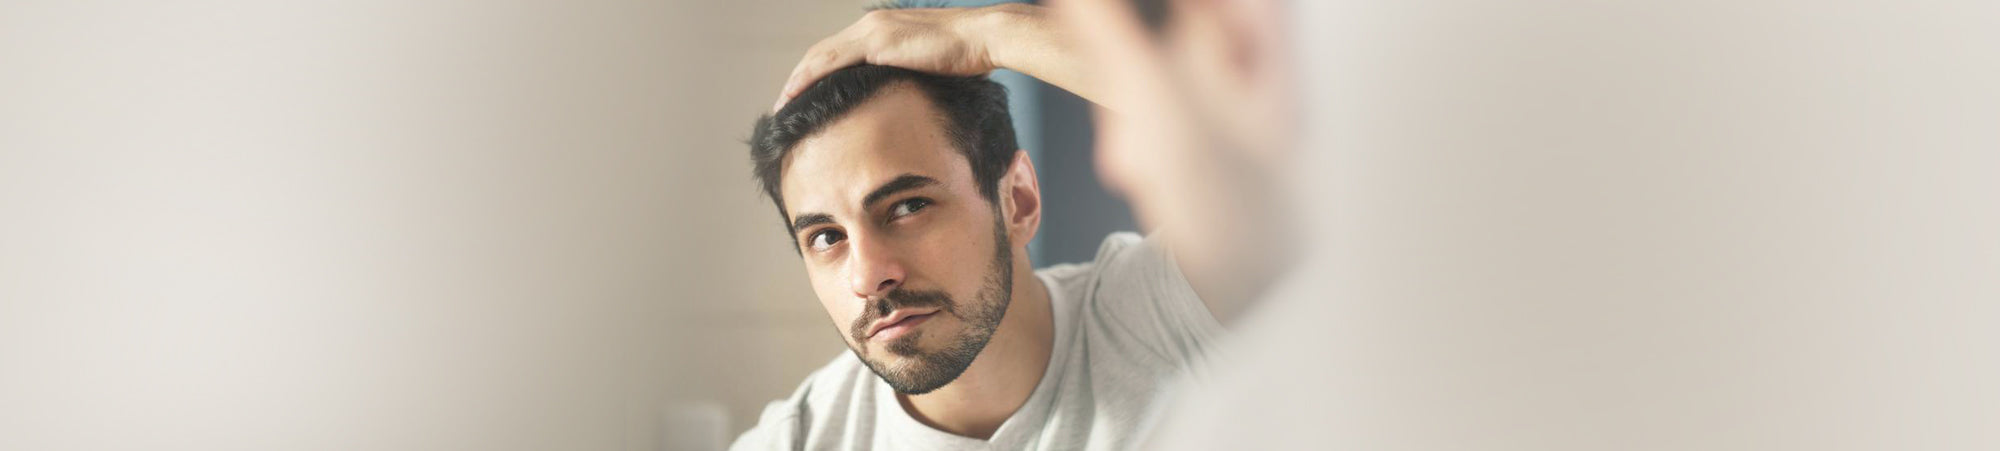 Can A Keto Diet Cause Hair Loss?